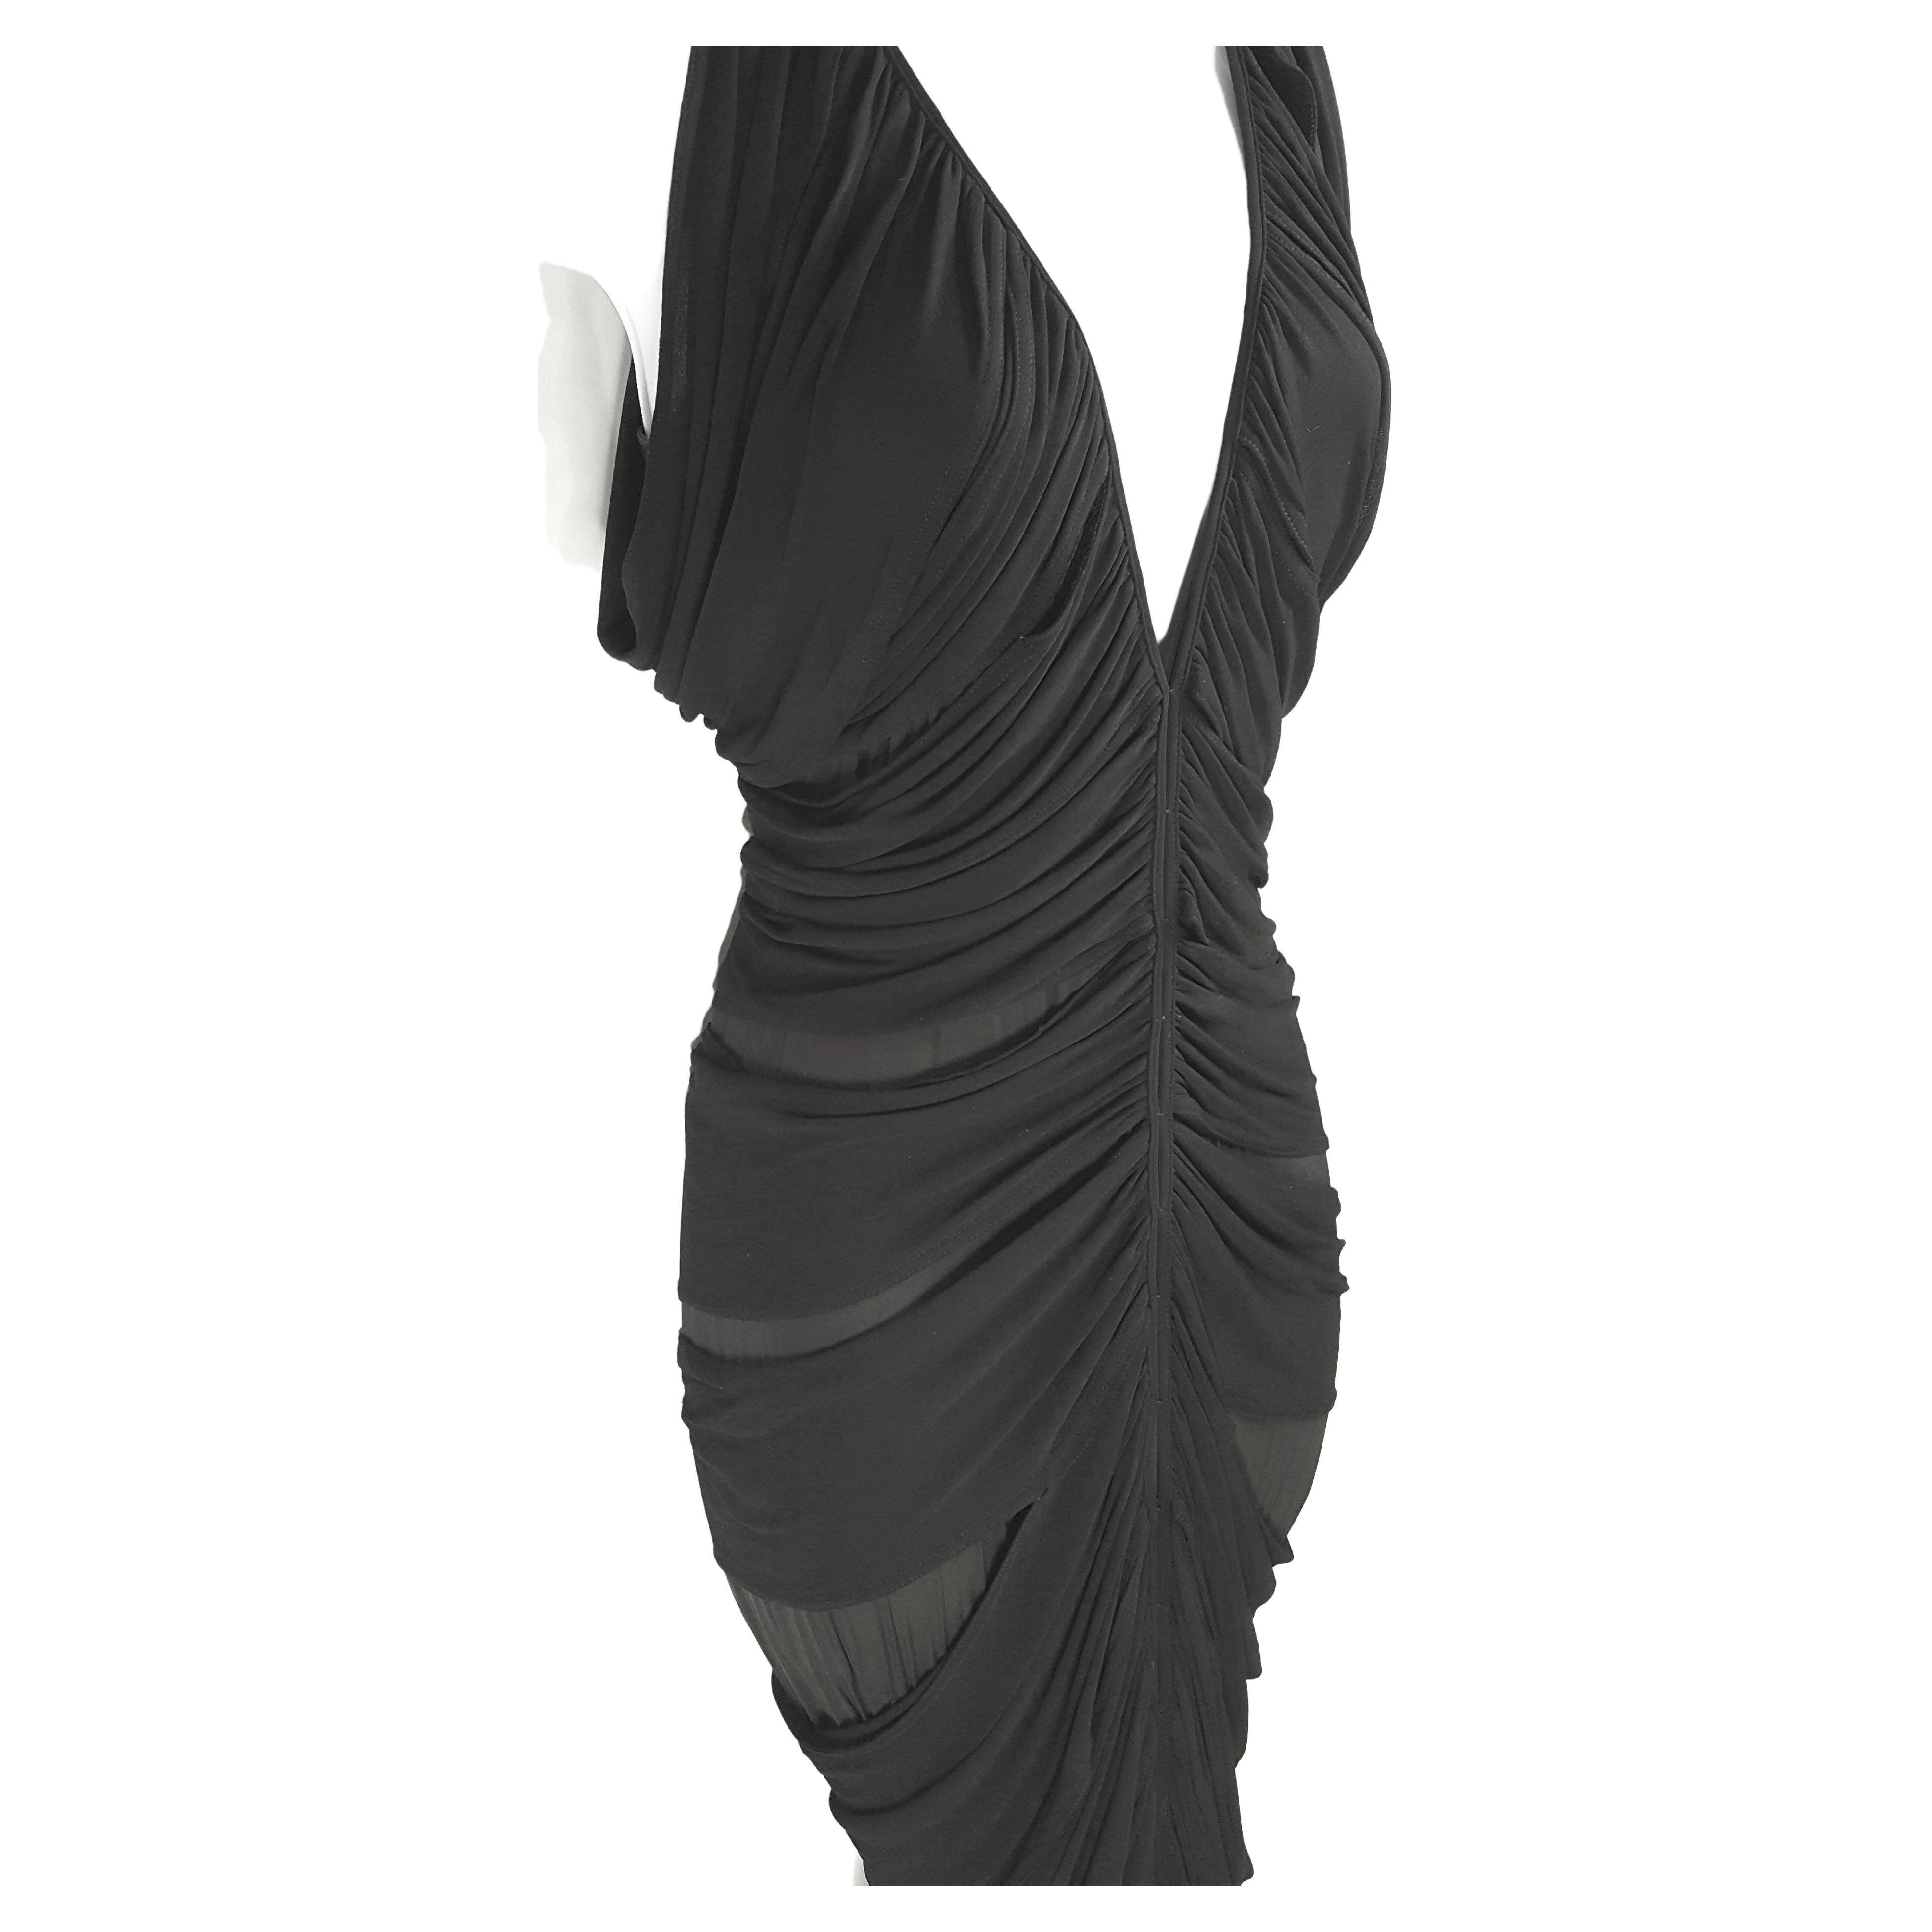 Pour sa première collection pour Yves Saint Laurent Paris/Rive Gauche, alors qu'il était également directeur de la création chez Gucci, l'Américain Tom Ford a conçu cette robe de soirée noire de printemps/été 2001 qui présente une superposition de